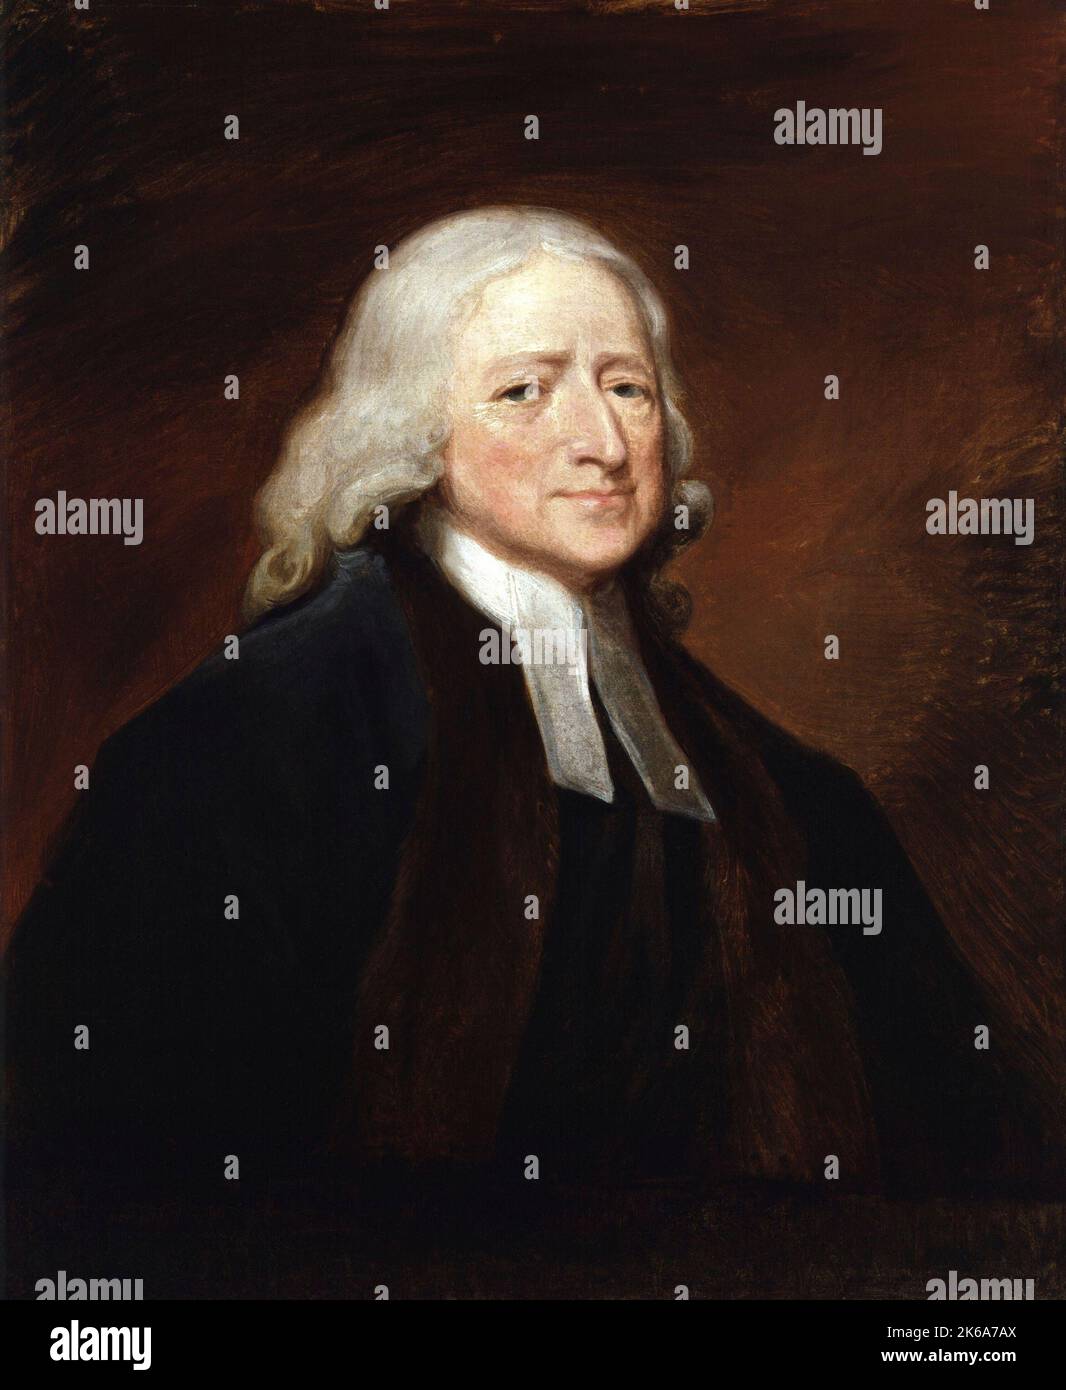 Porträt des englischen Evangelisten und Theologen John Wesley. Stockfoto